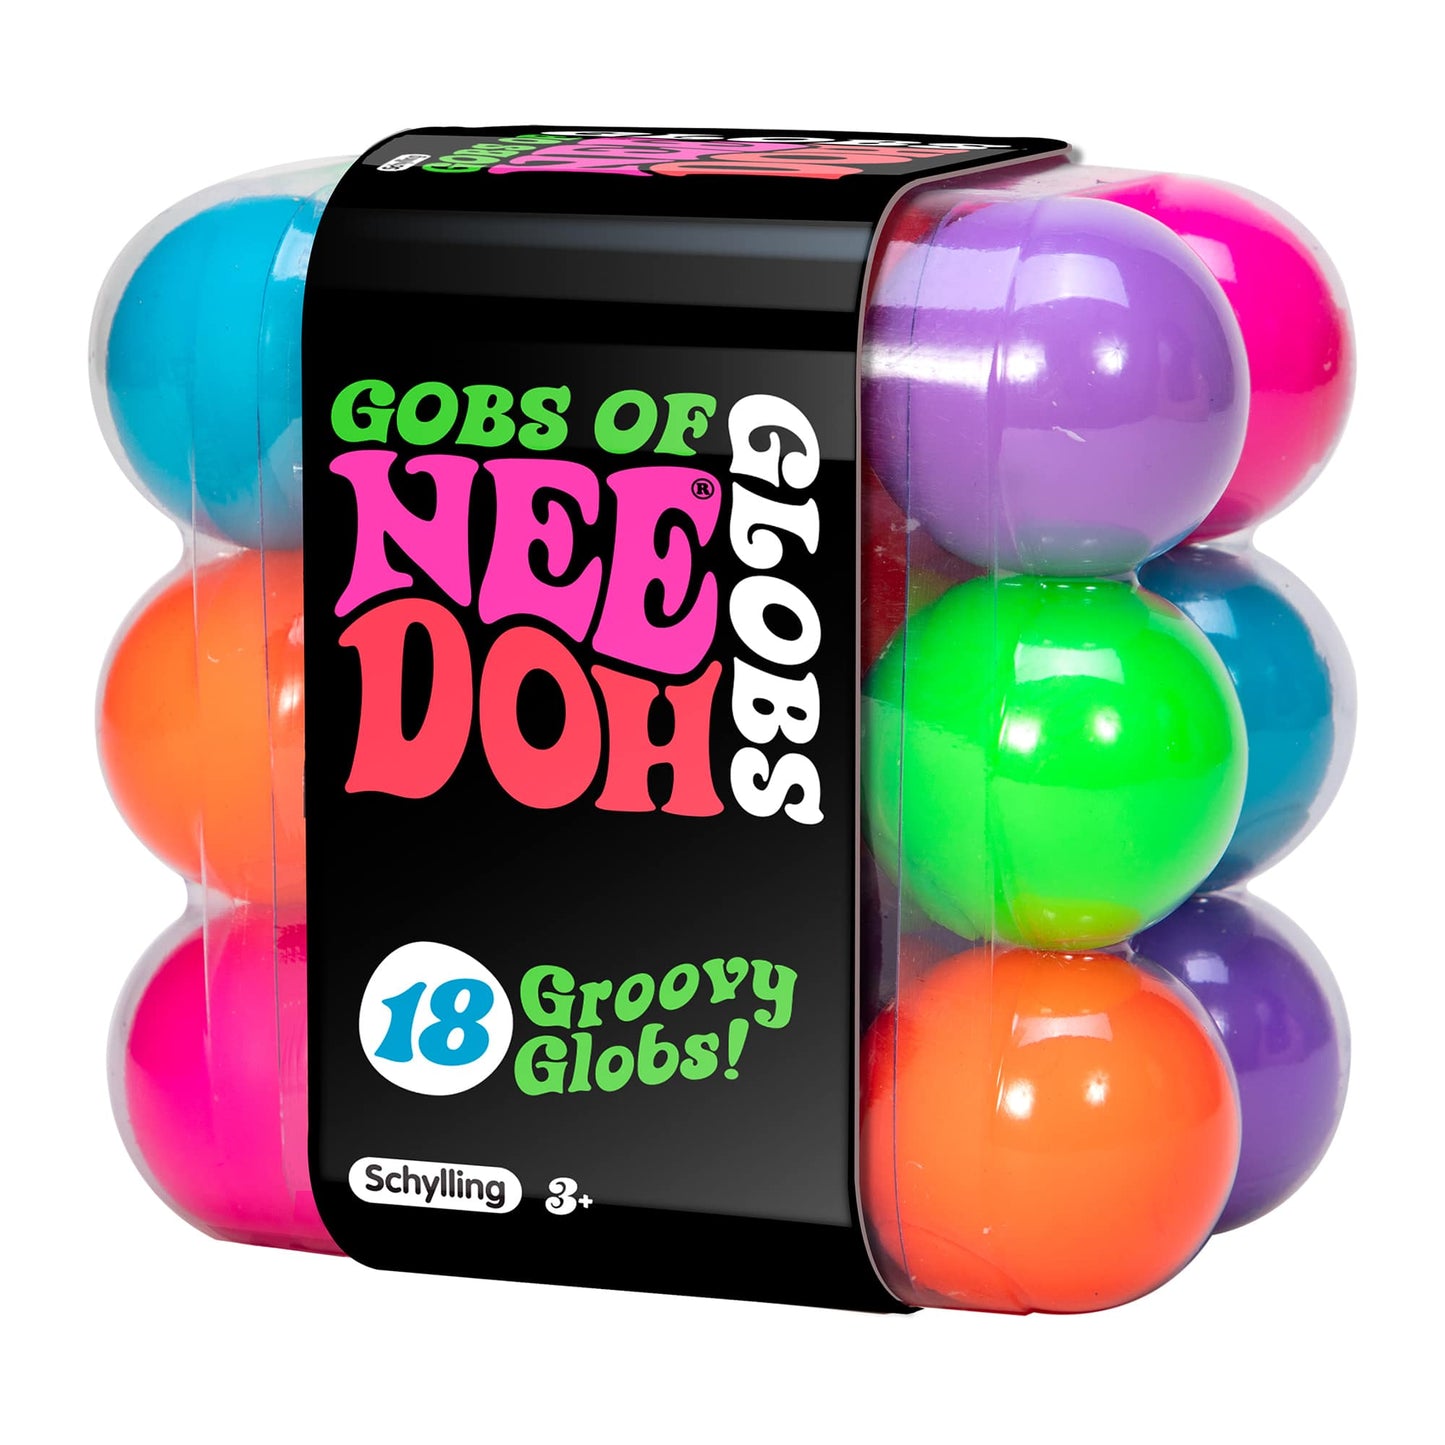 Nee Doh Gobs of Teenie Groovy Globs